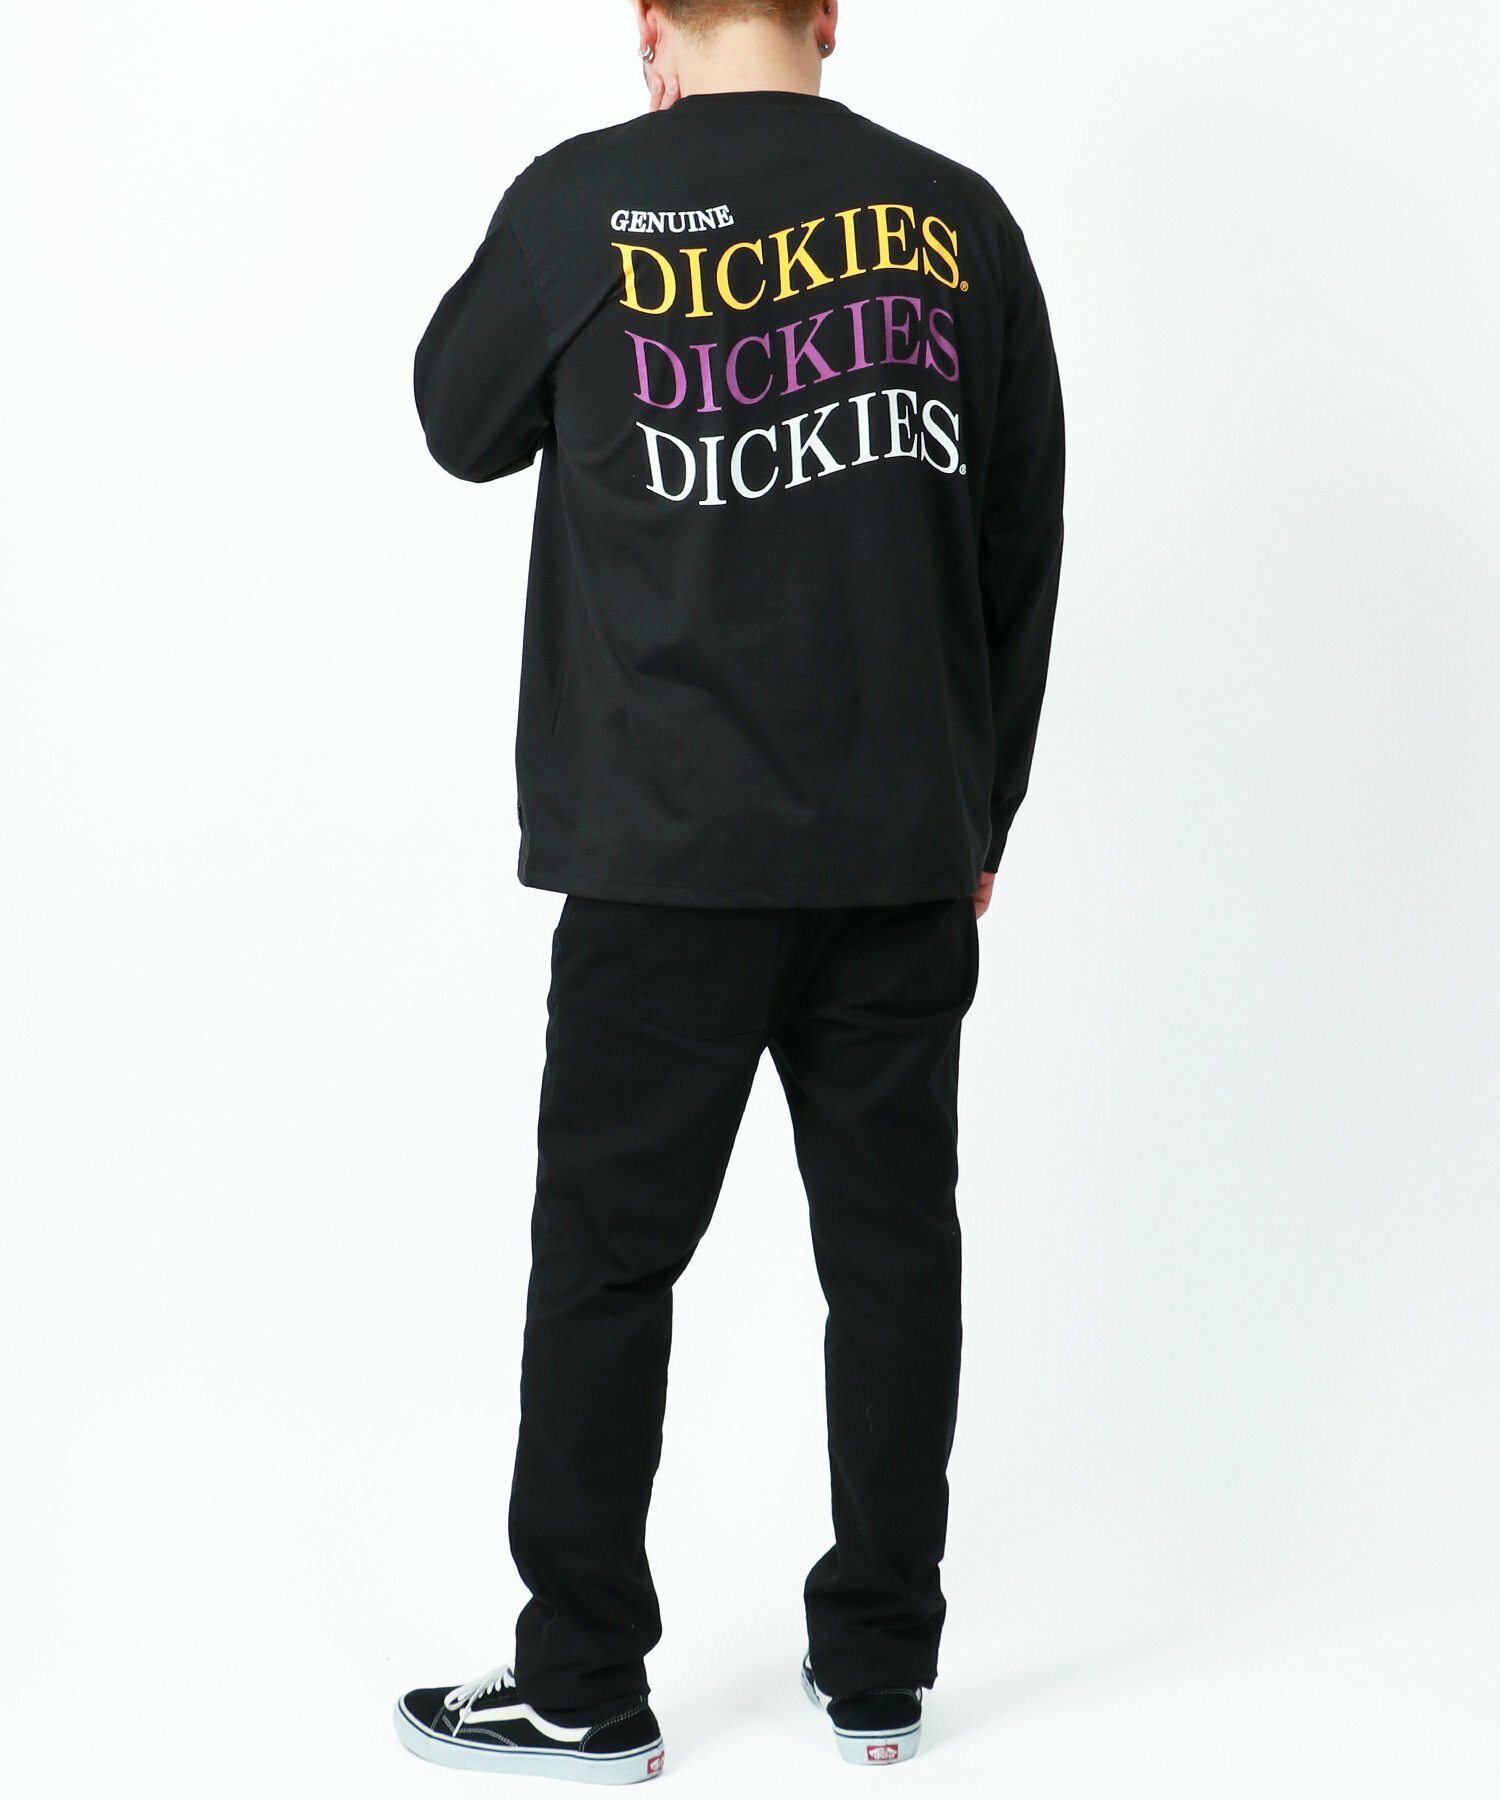 GENUINE Dickies Tシャツ メンズ 大きいサイズ 長袖 バック ロゴ プリント